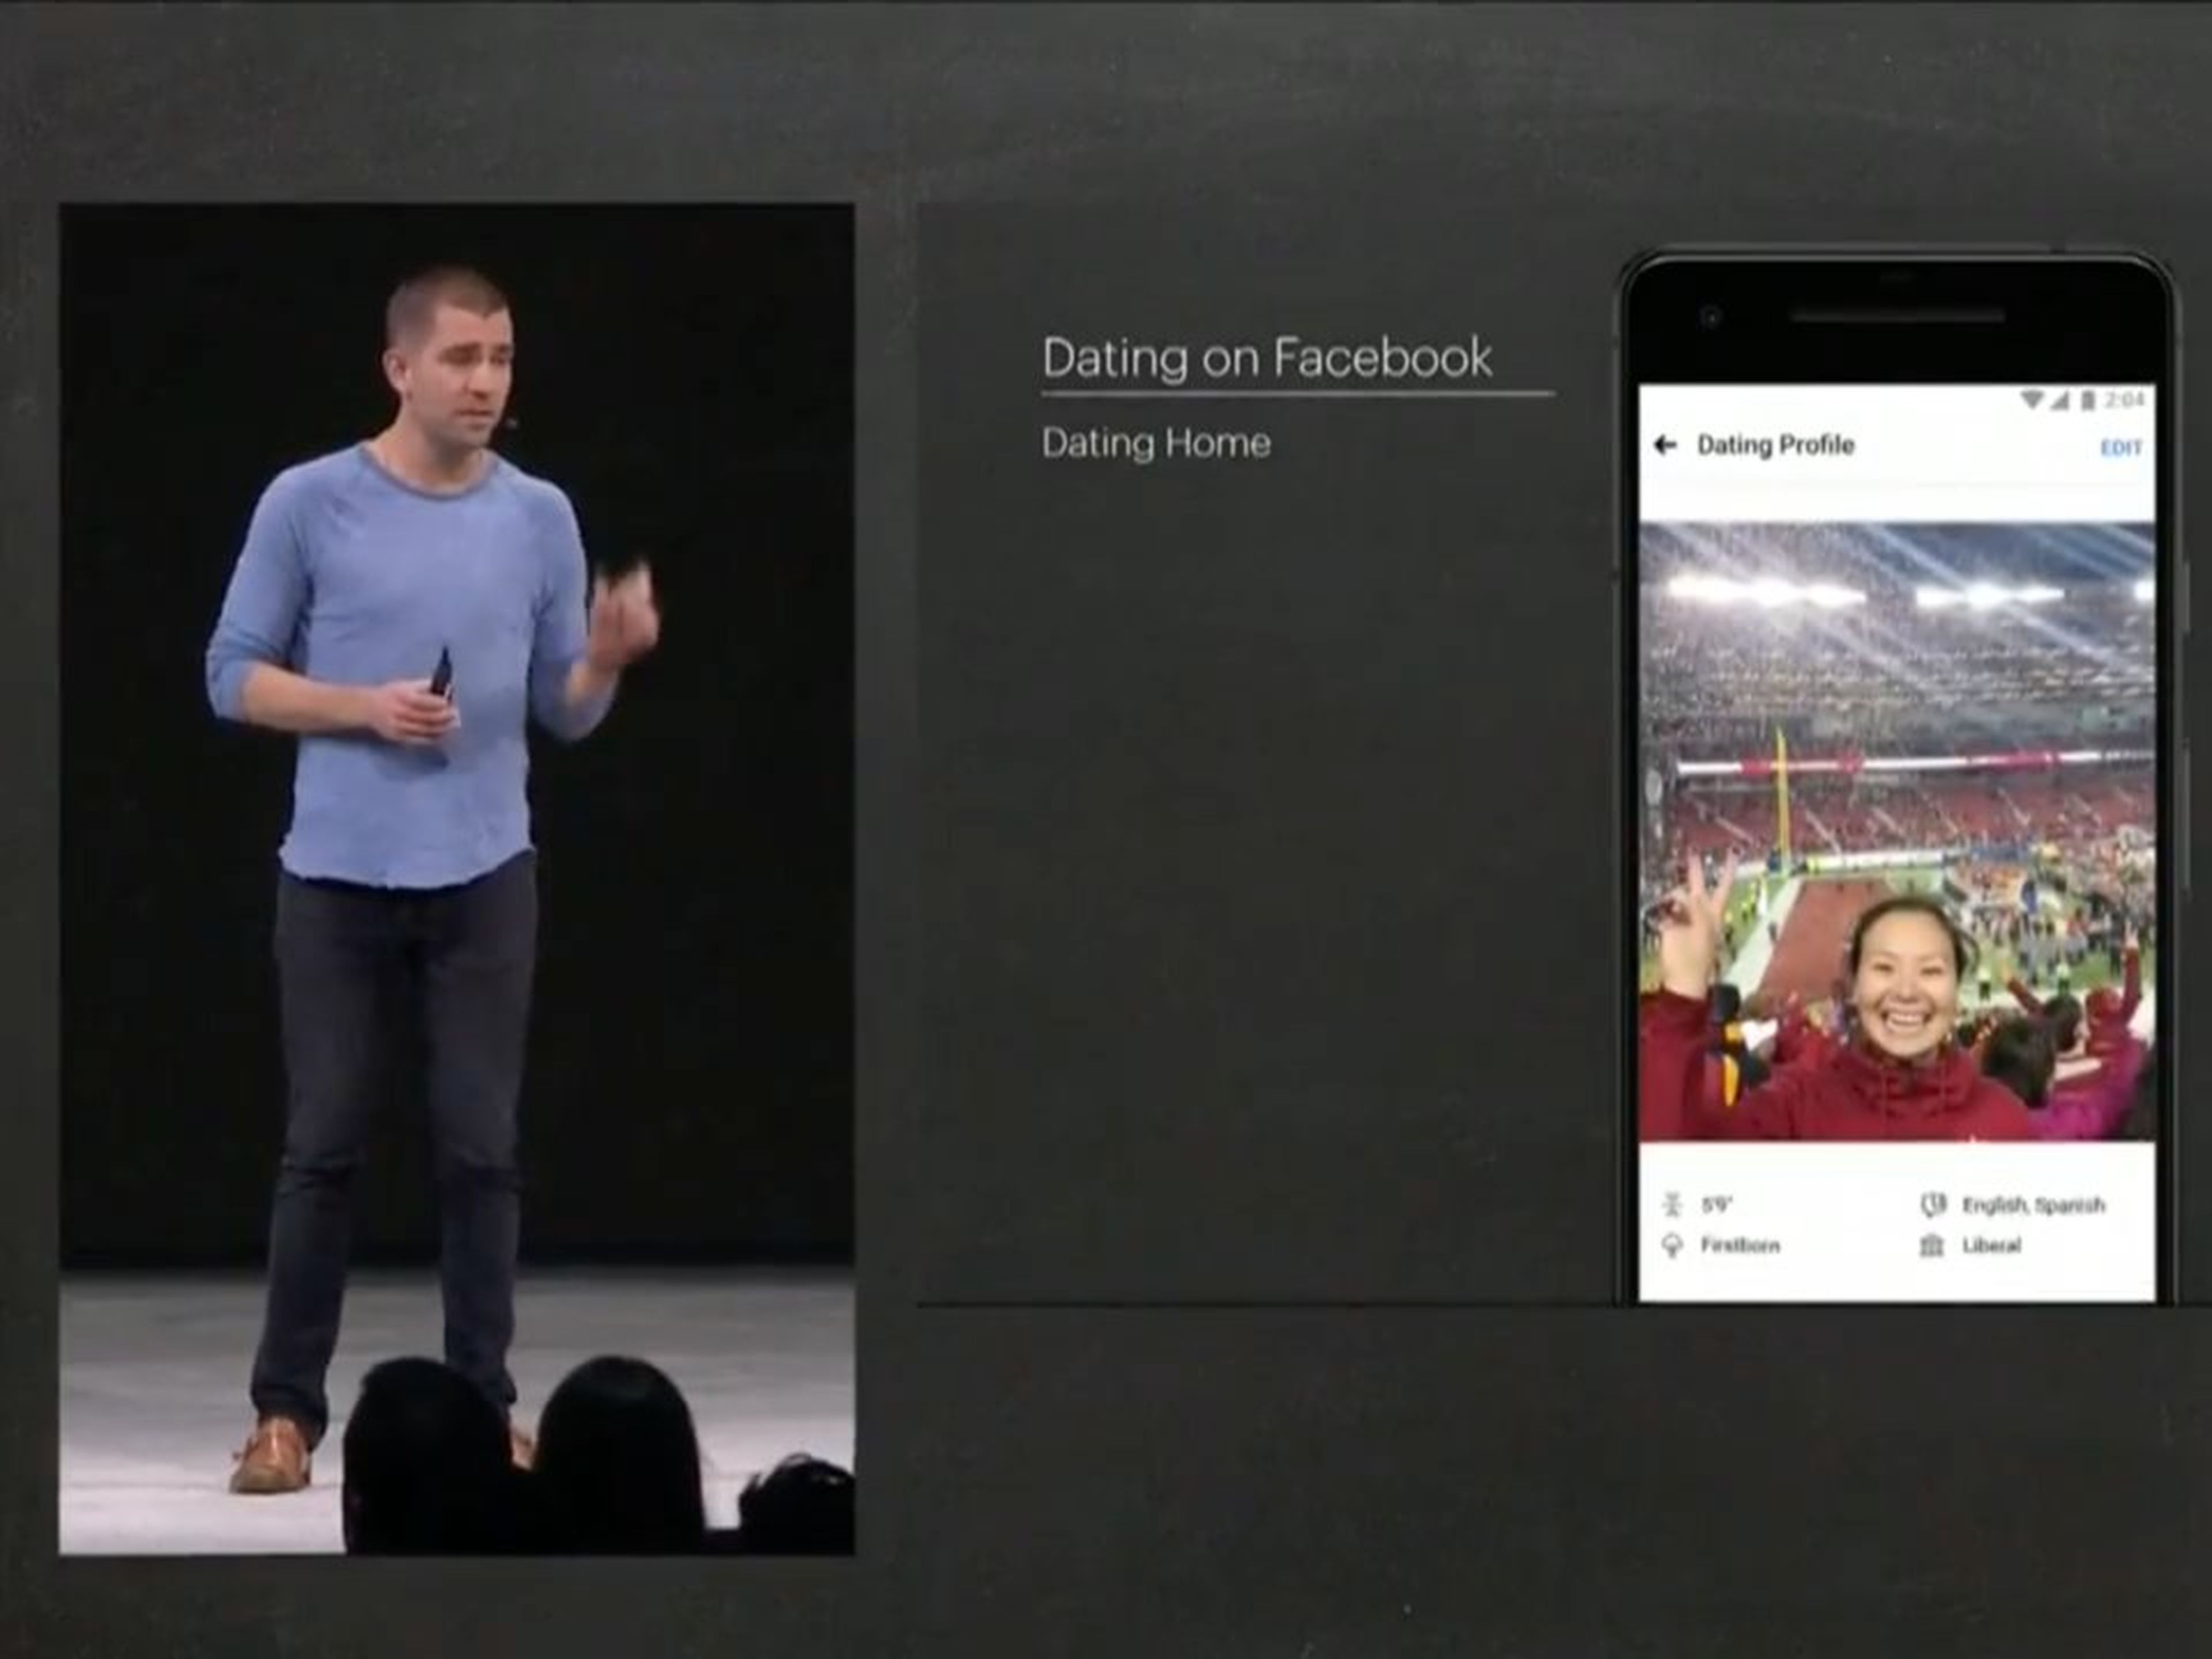 El jefe de producto de Facebook, Chris Cox, presentando la app de citas "Dating home".